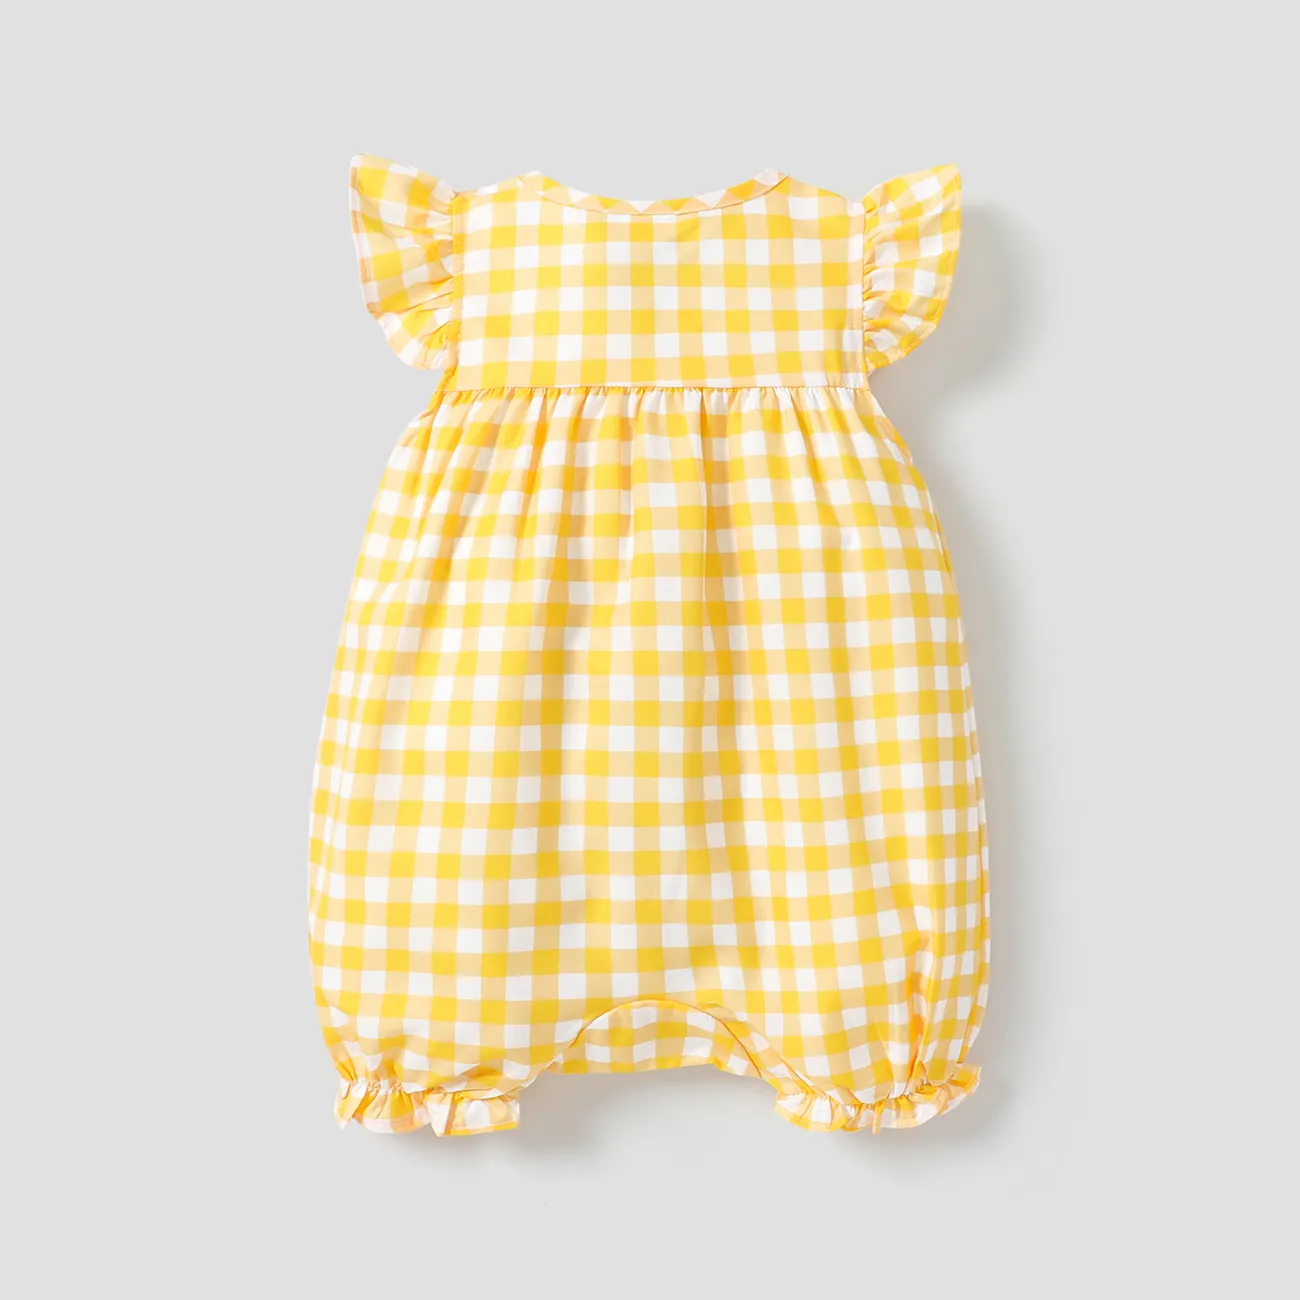 طفلة كل انحاء صفراء منقوشة / ليمون رومبير بأكمام رفرفة الأصفر big image 1